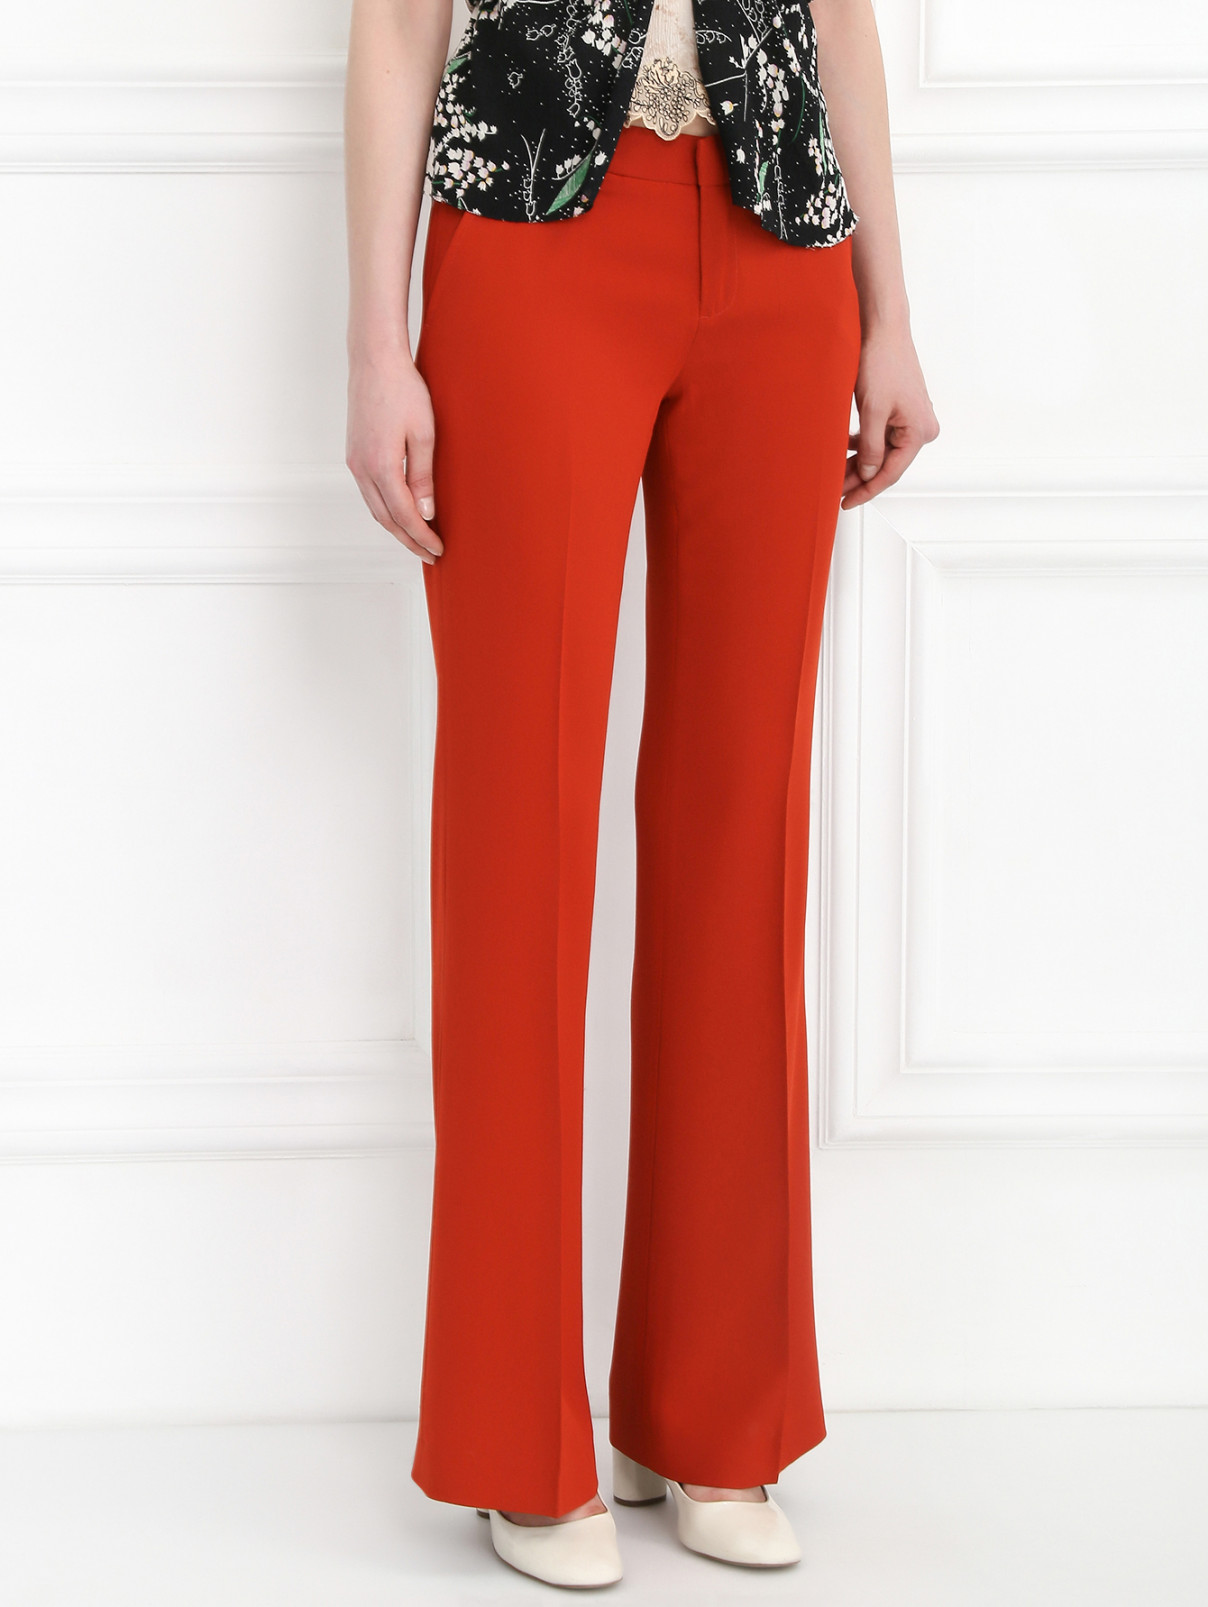 Расклешенные брюки со стрелками Joie  –  Модель Верх-Низ  – Цвет:  Оранжевый